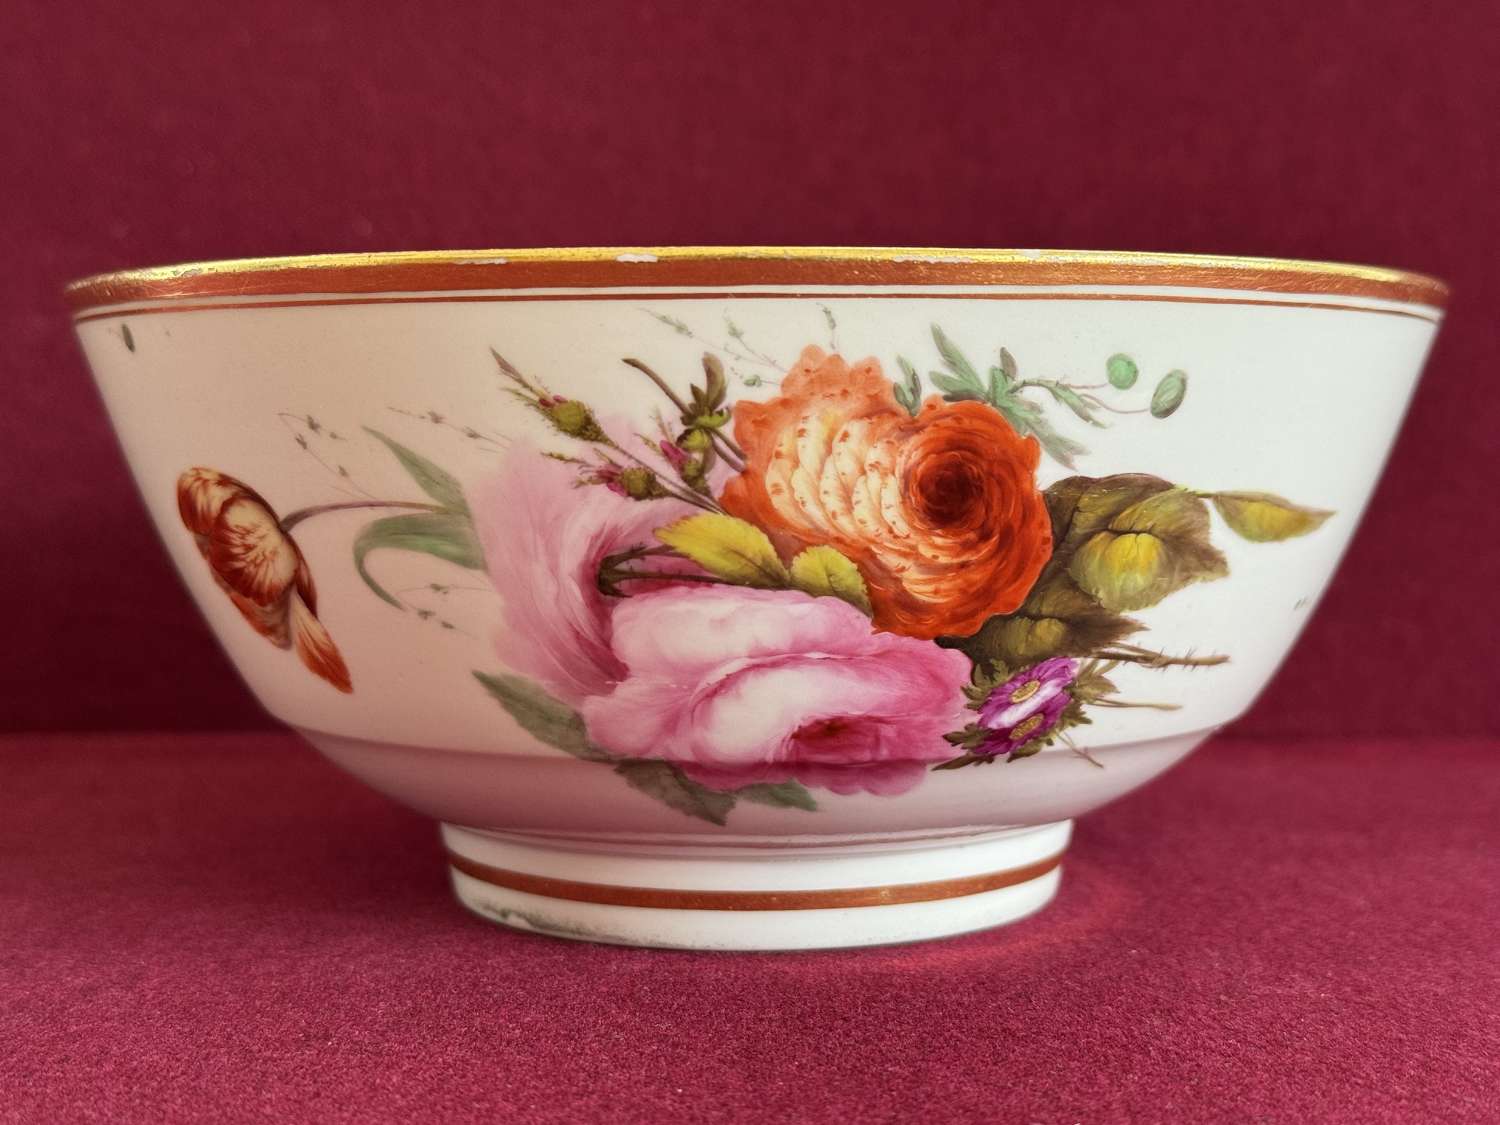 A Flight, Barr and Barr Worcester Porcelain Waste Bowl c.1815-1820